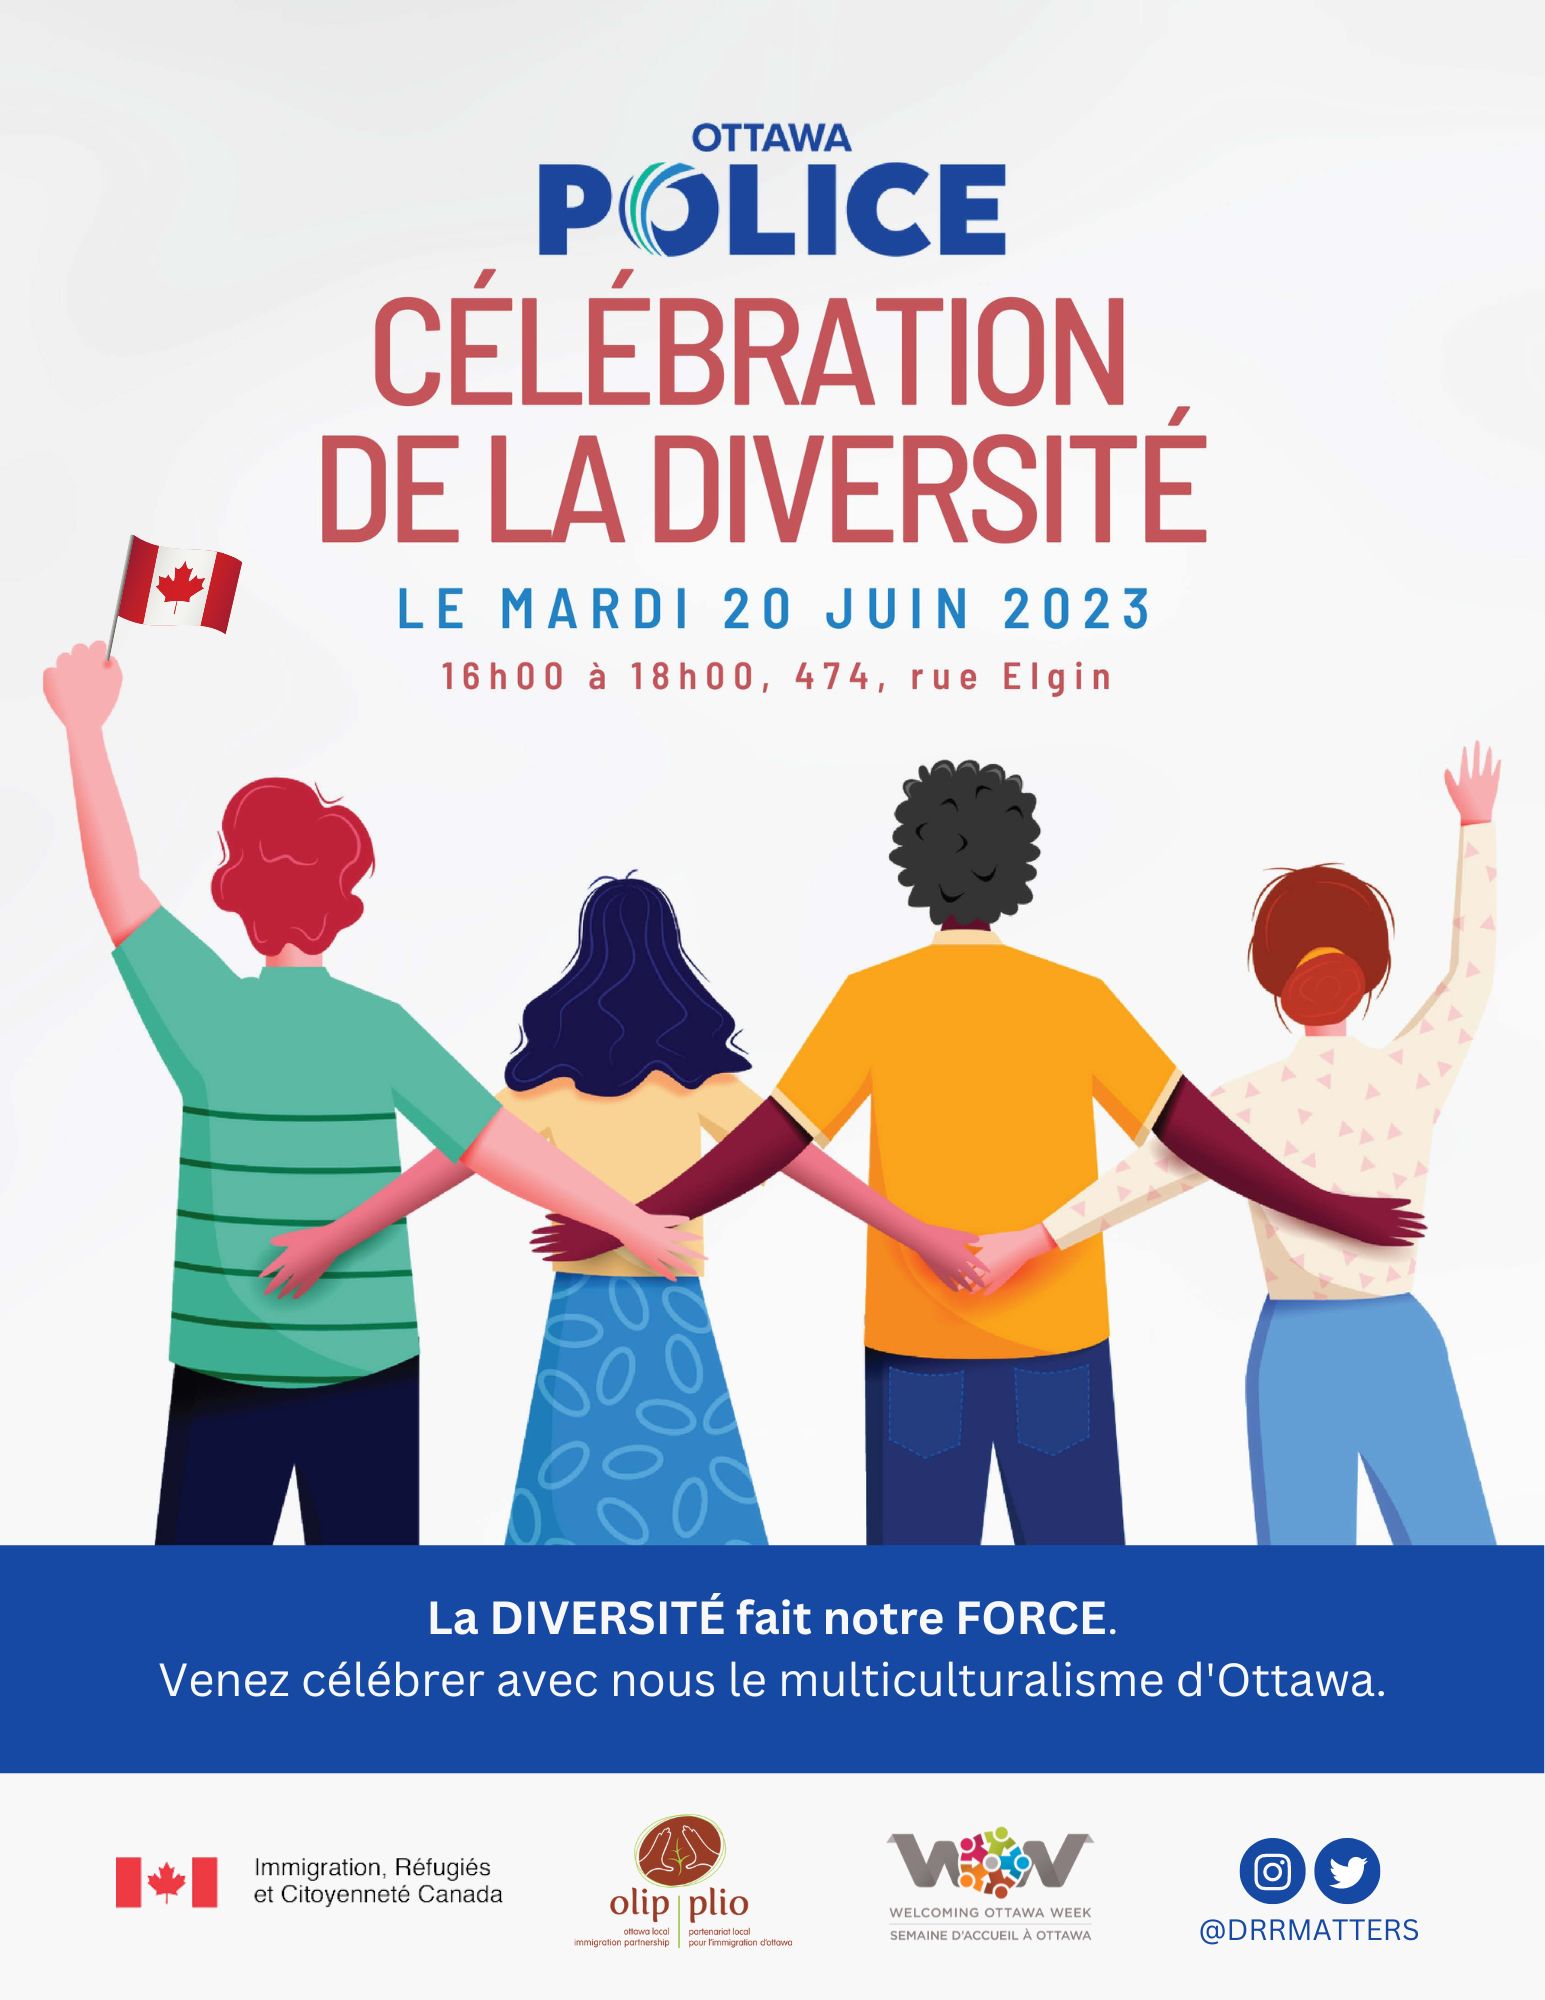 Fête de la diversité de la Police d’Ottawa, le 20 juin